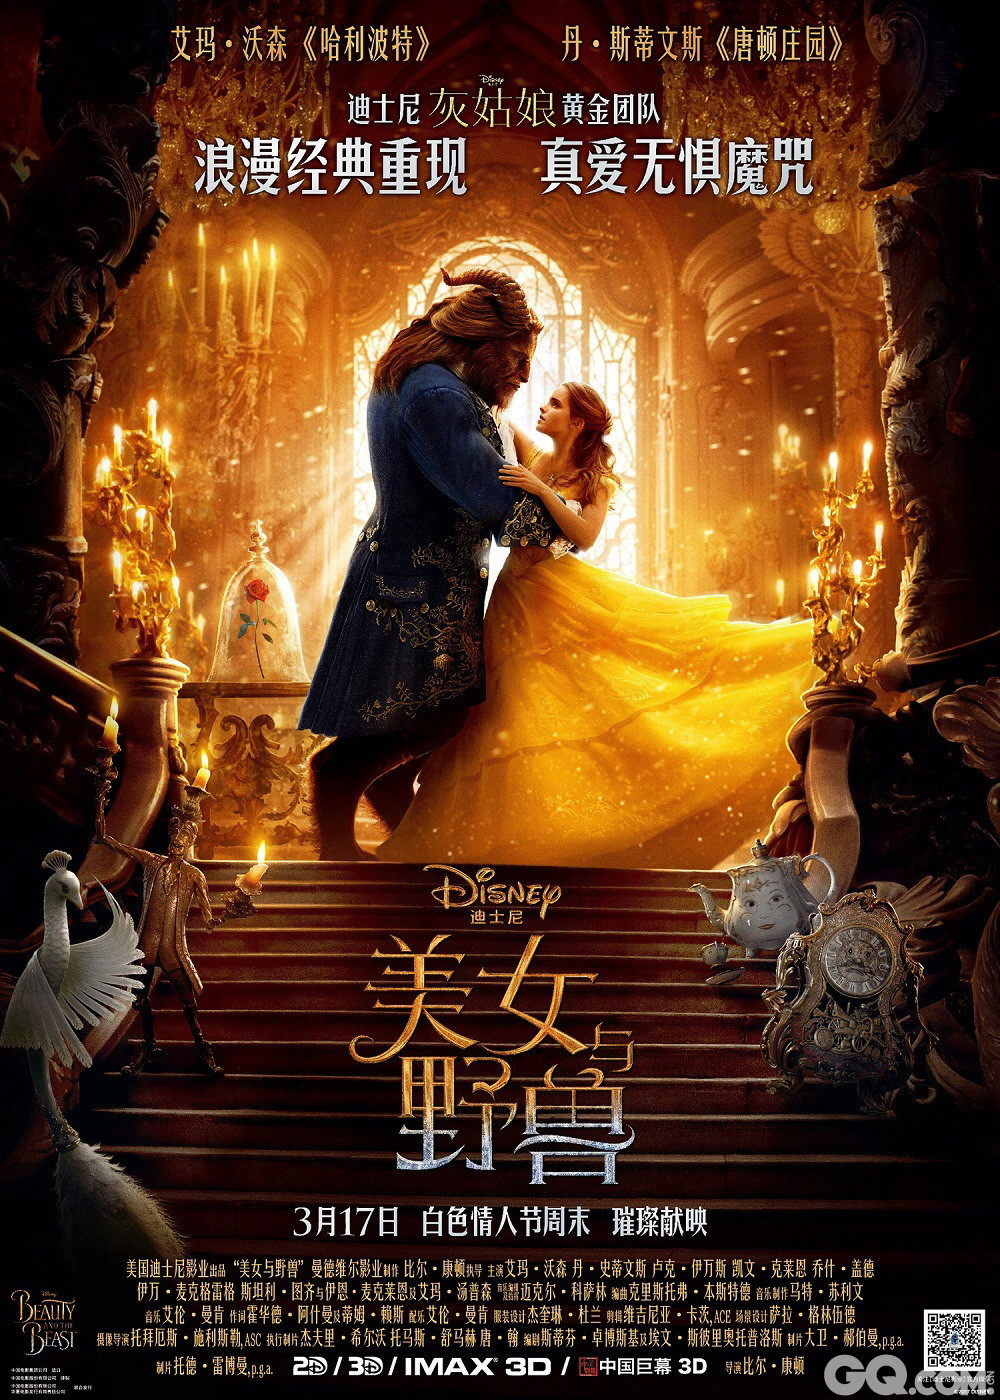 迪士尼影业也在同日宣布为中国影迷送上独家福利——四大主角艾玛·沃森(Emma Watson)、丹·史蒂文斯(Dan Stevens)、卢克·伊万斯(Luke Evans)、乔什·盖德(Josh Gad)将和导演比尔·康顿(Bill Condon)一起来华宣传，于2月27日空降上海迪士尼度假区的迪士尼小镇，开启《美女与野兽》盛大首映礼。